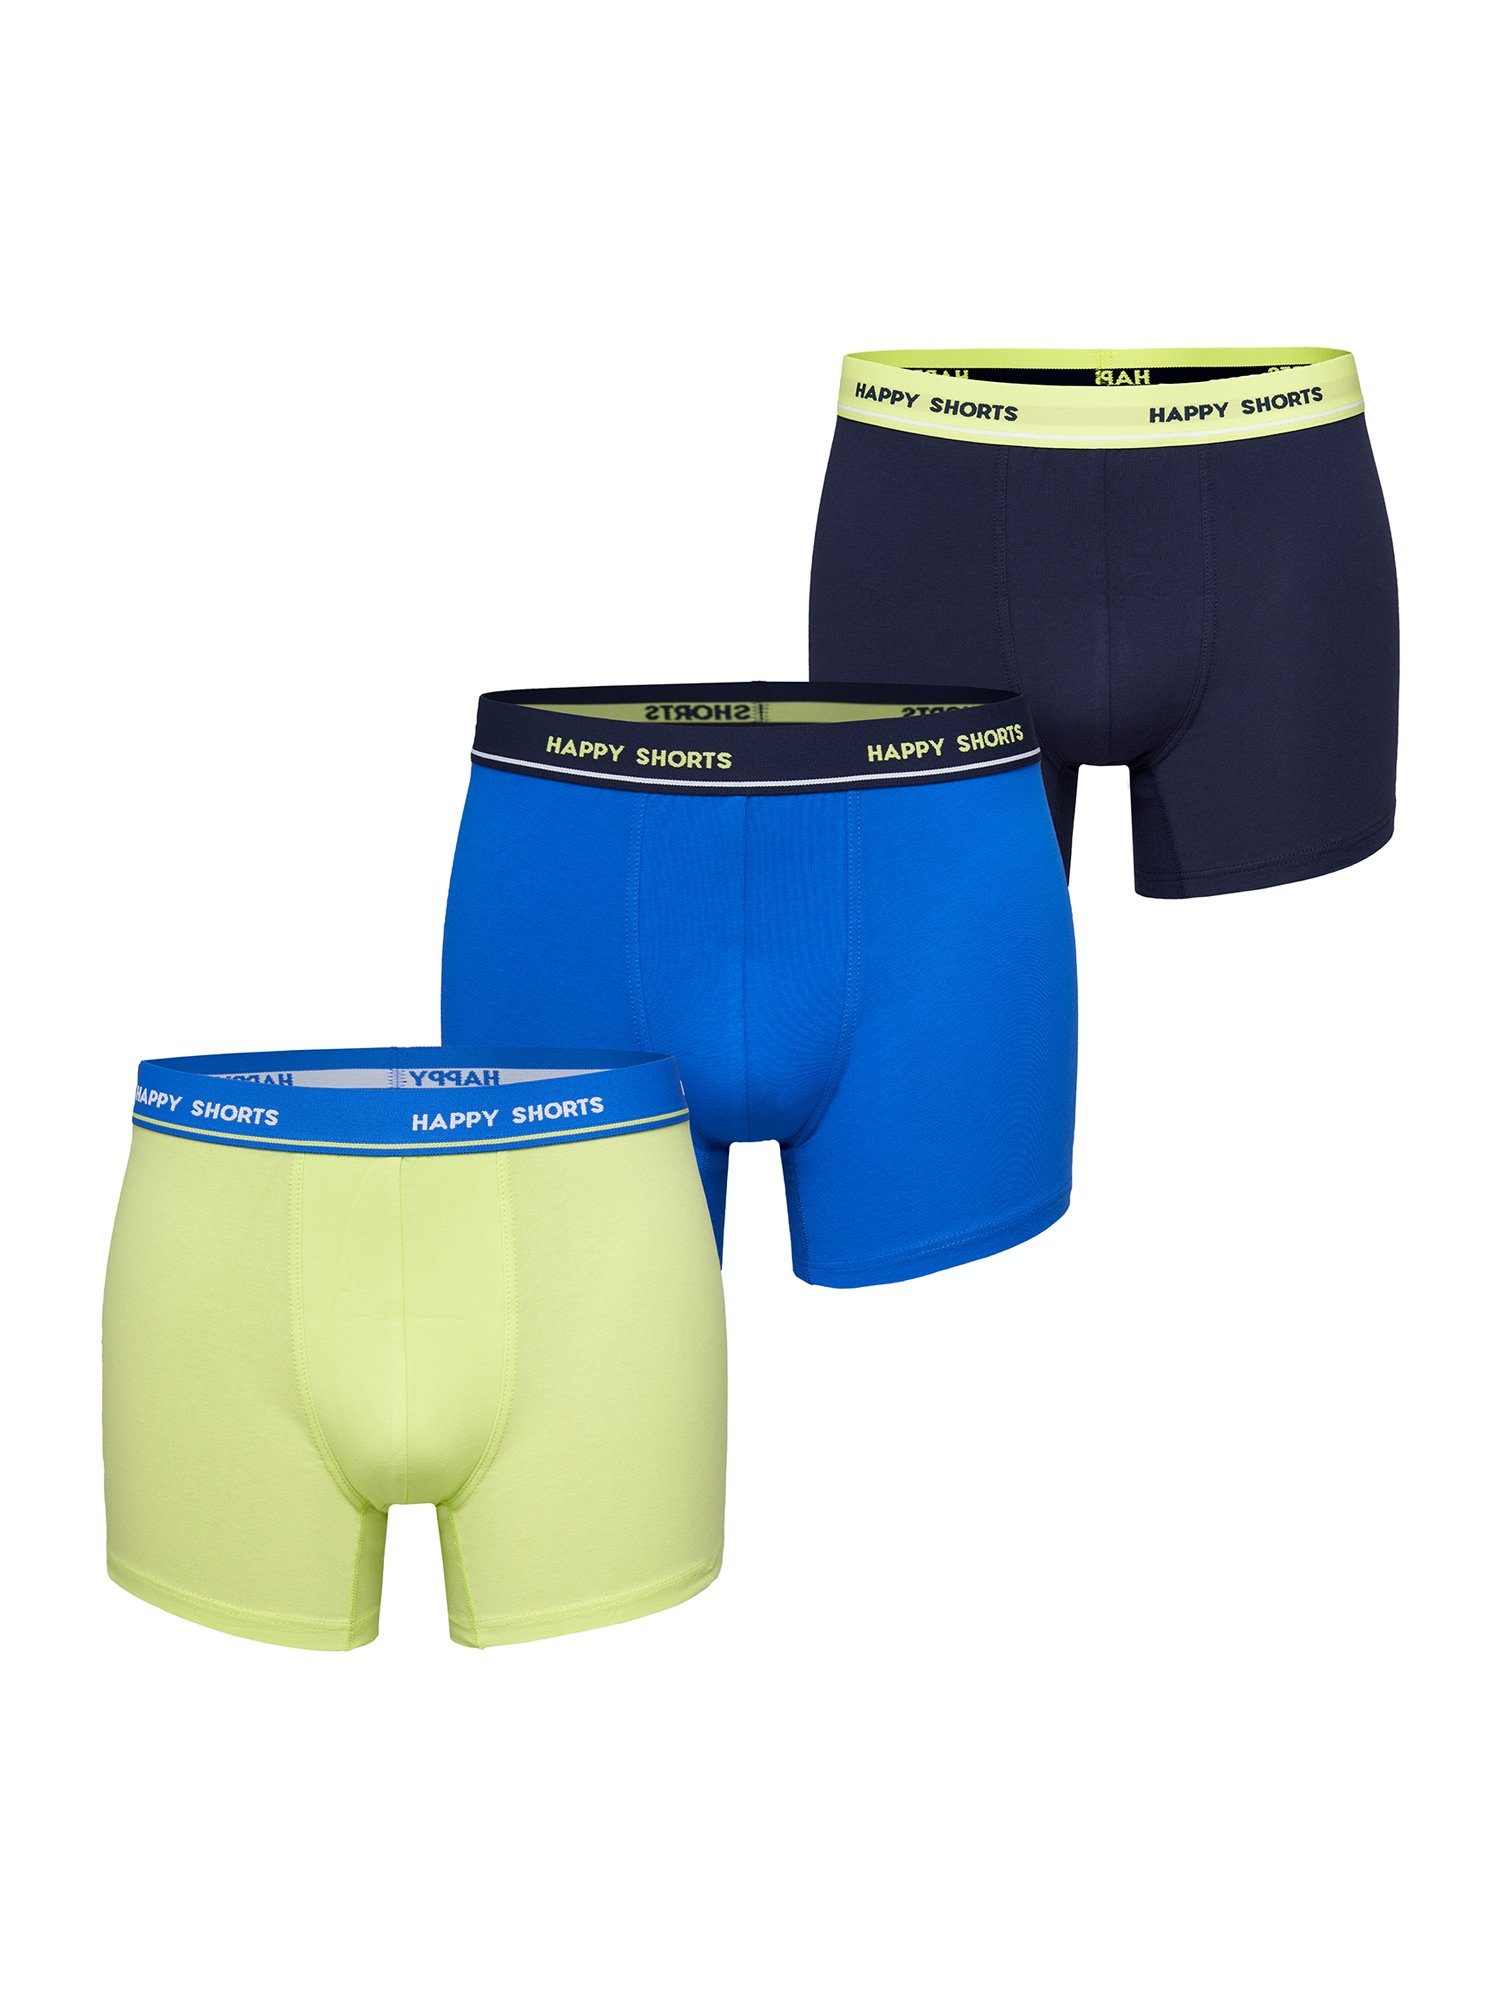 Phil & Co. Retro Pants All Styles (3-St) Boxershorts Trunks Herren bequem und stylisch